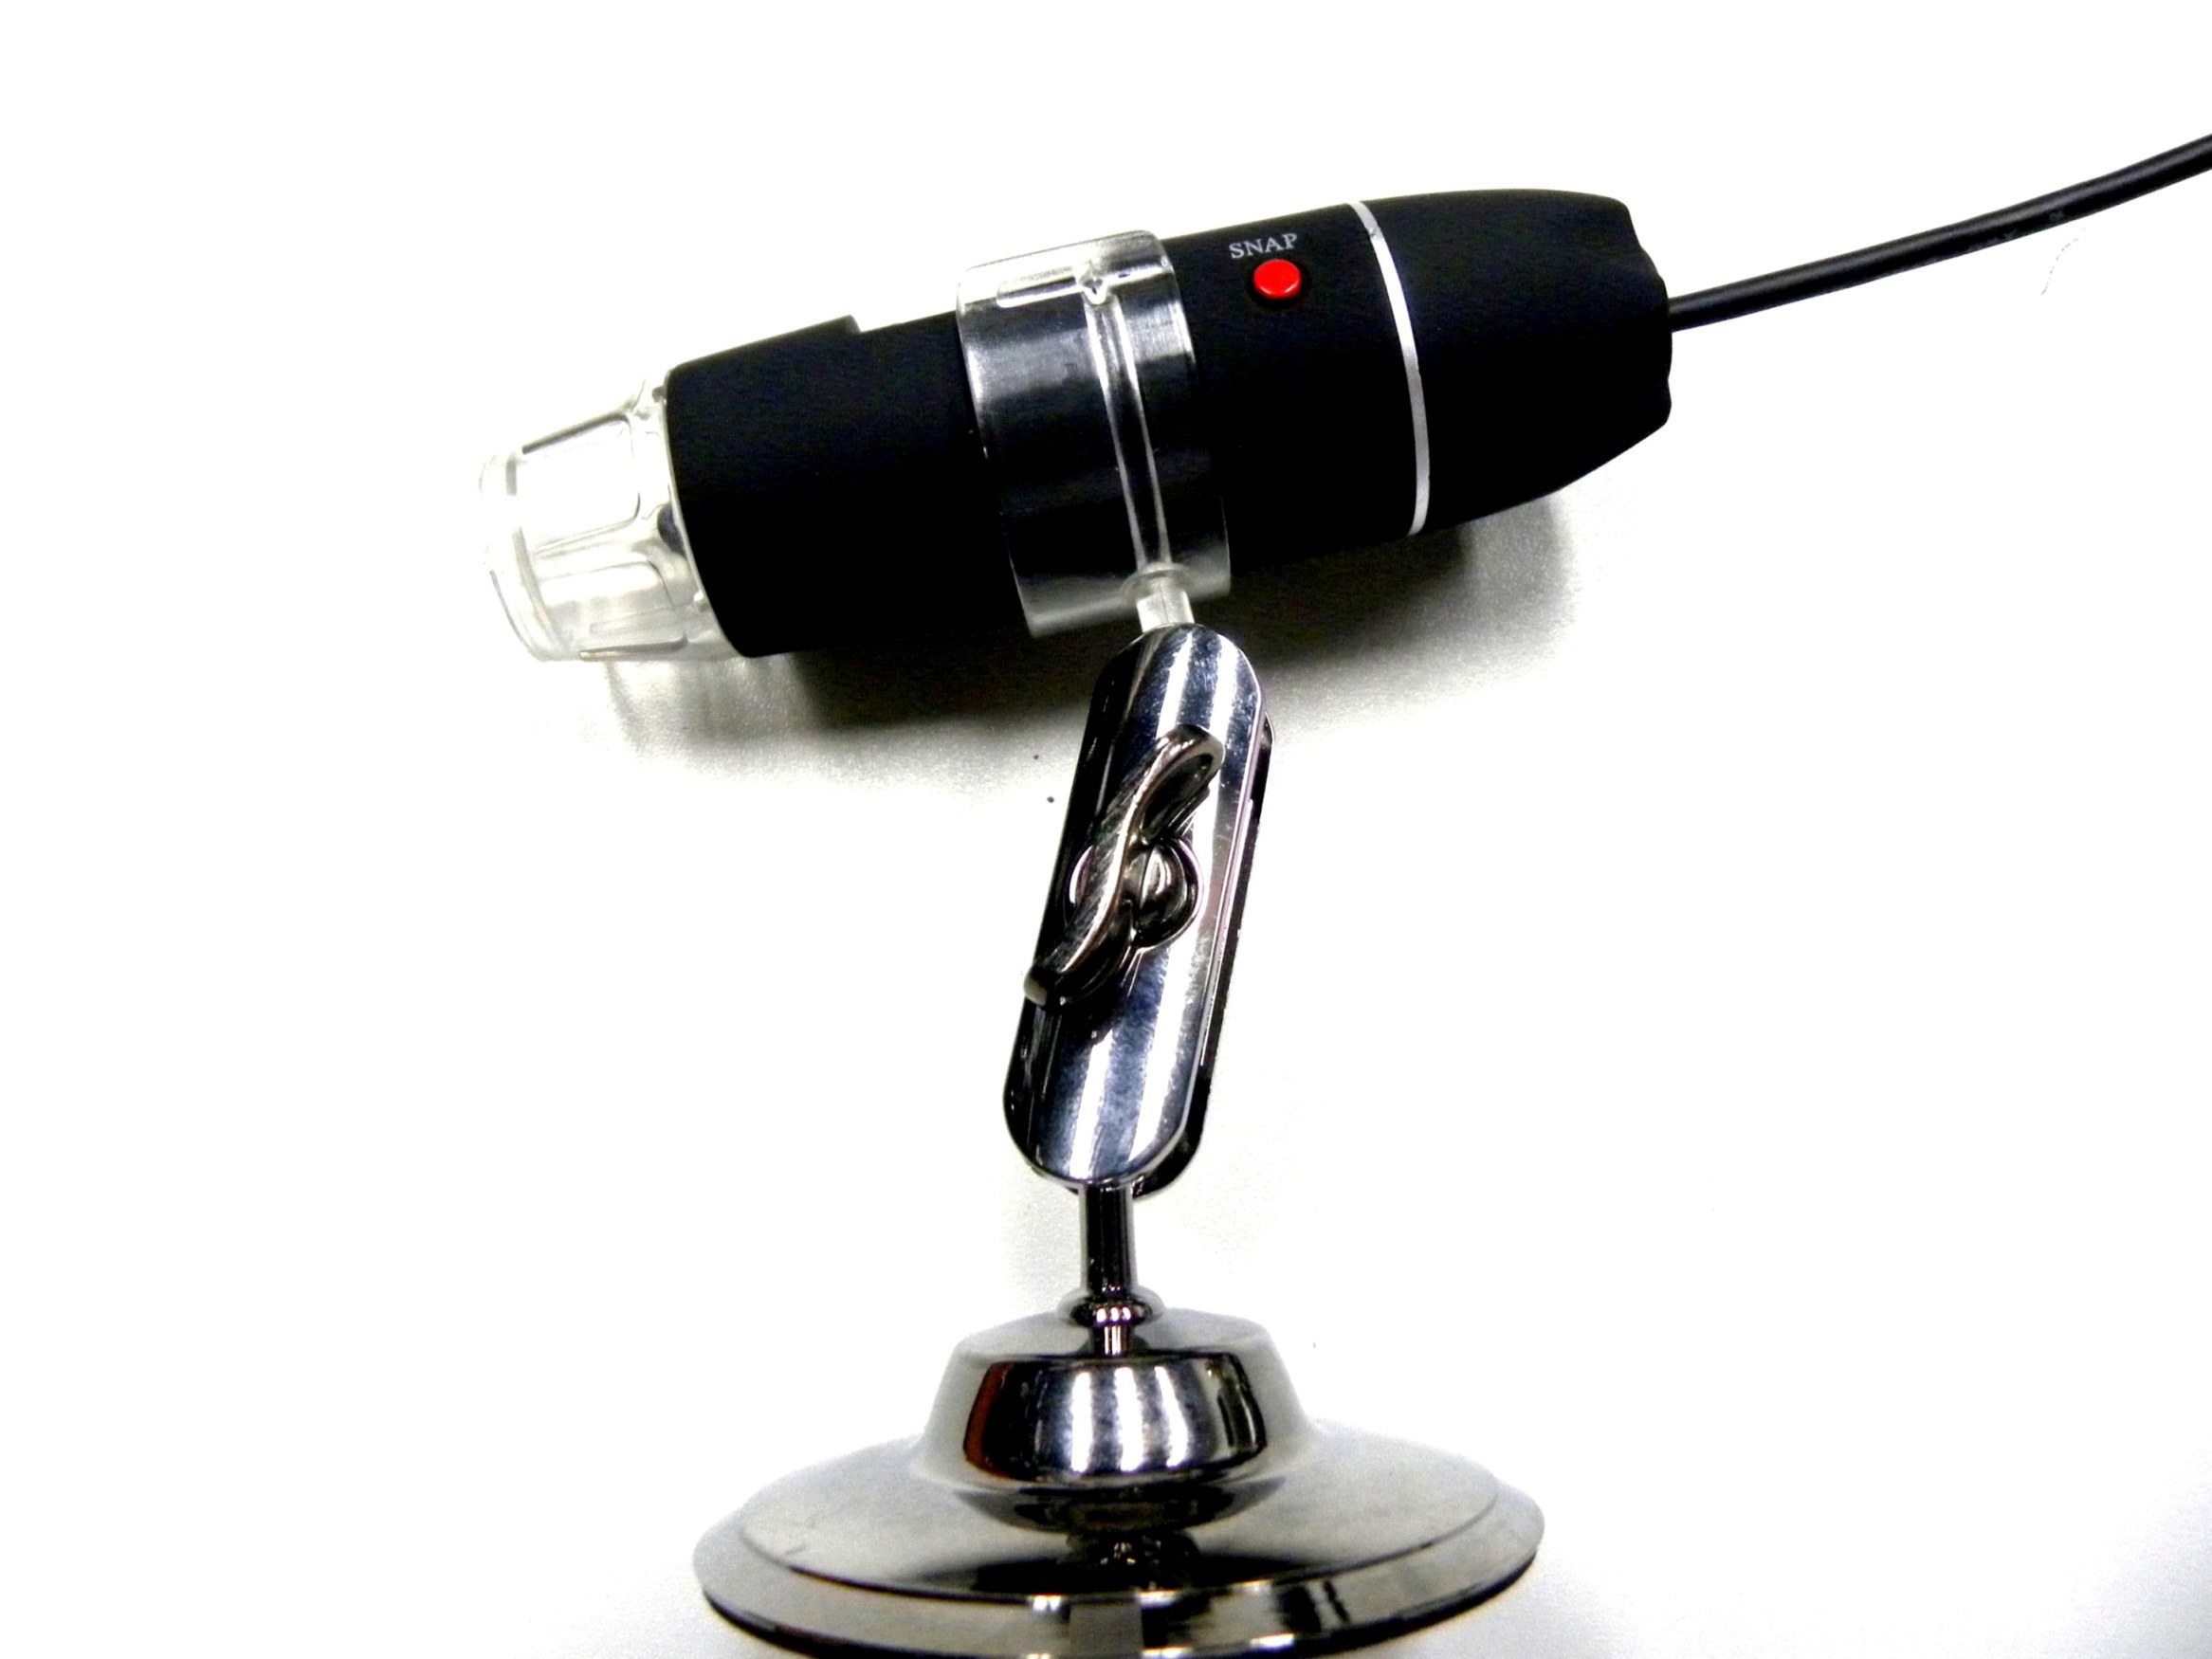 DMU-U400x 디지털 USB 현미경, 현미경 카메라